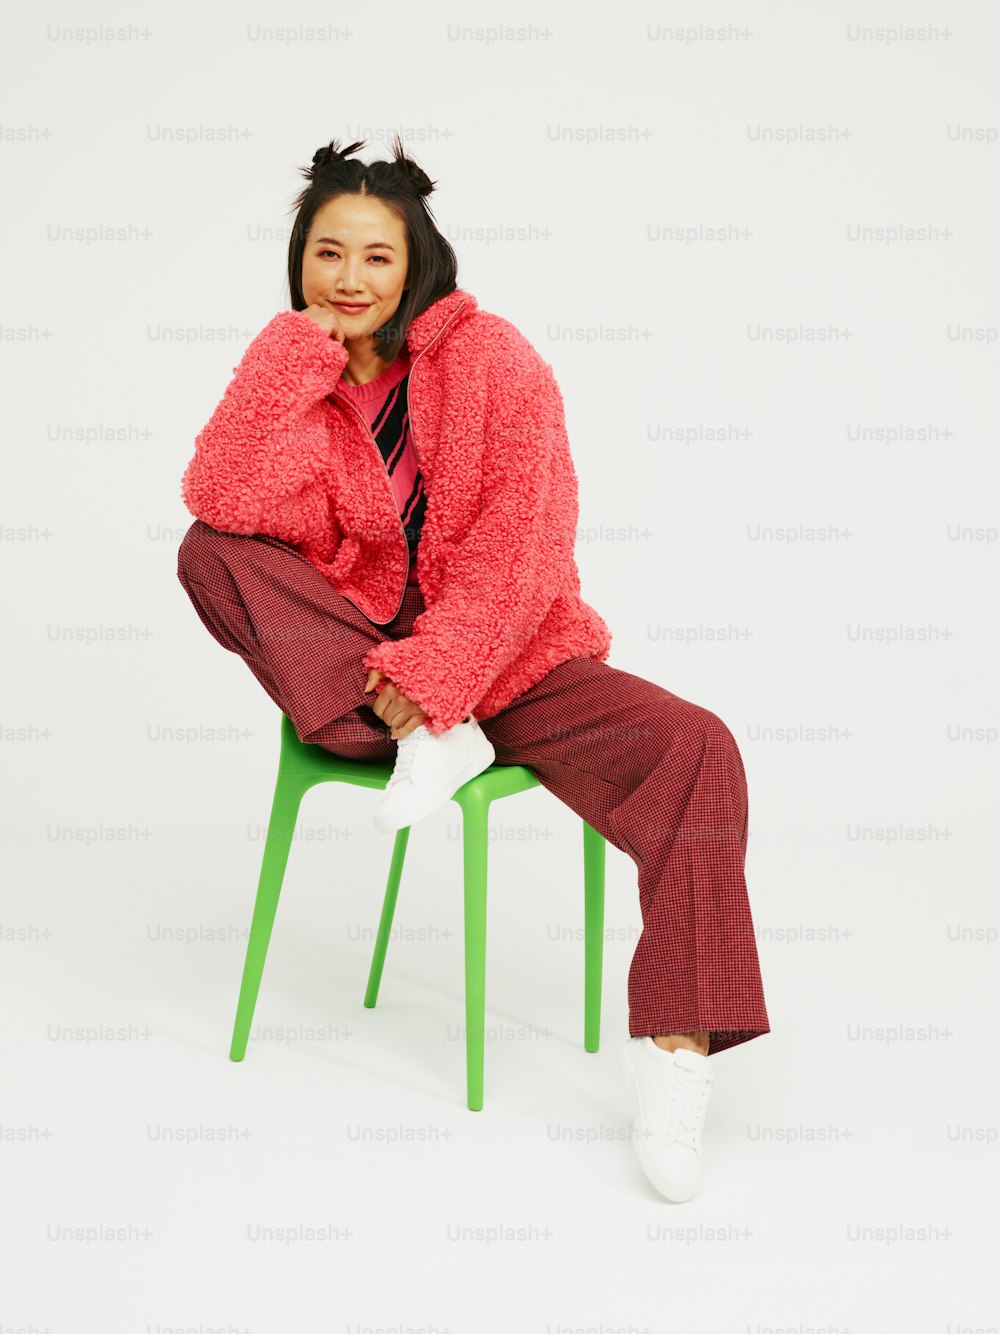 Una mujer está sentada en una silla verde